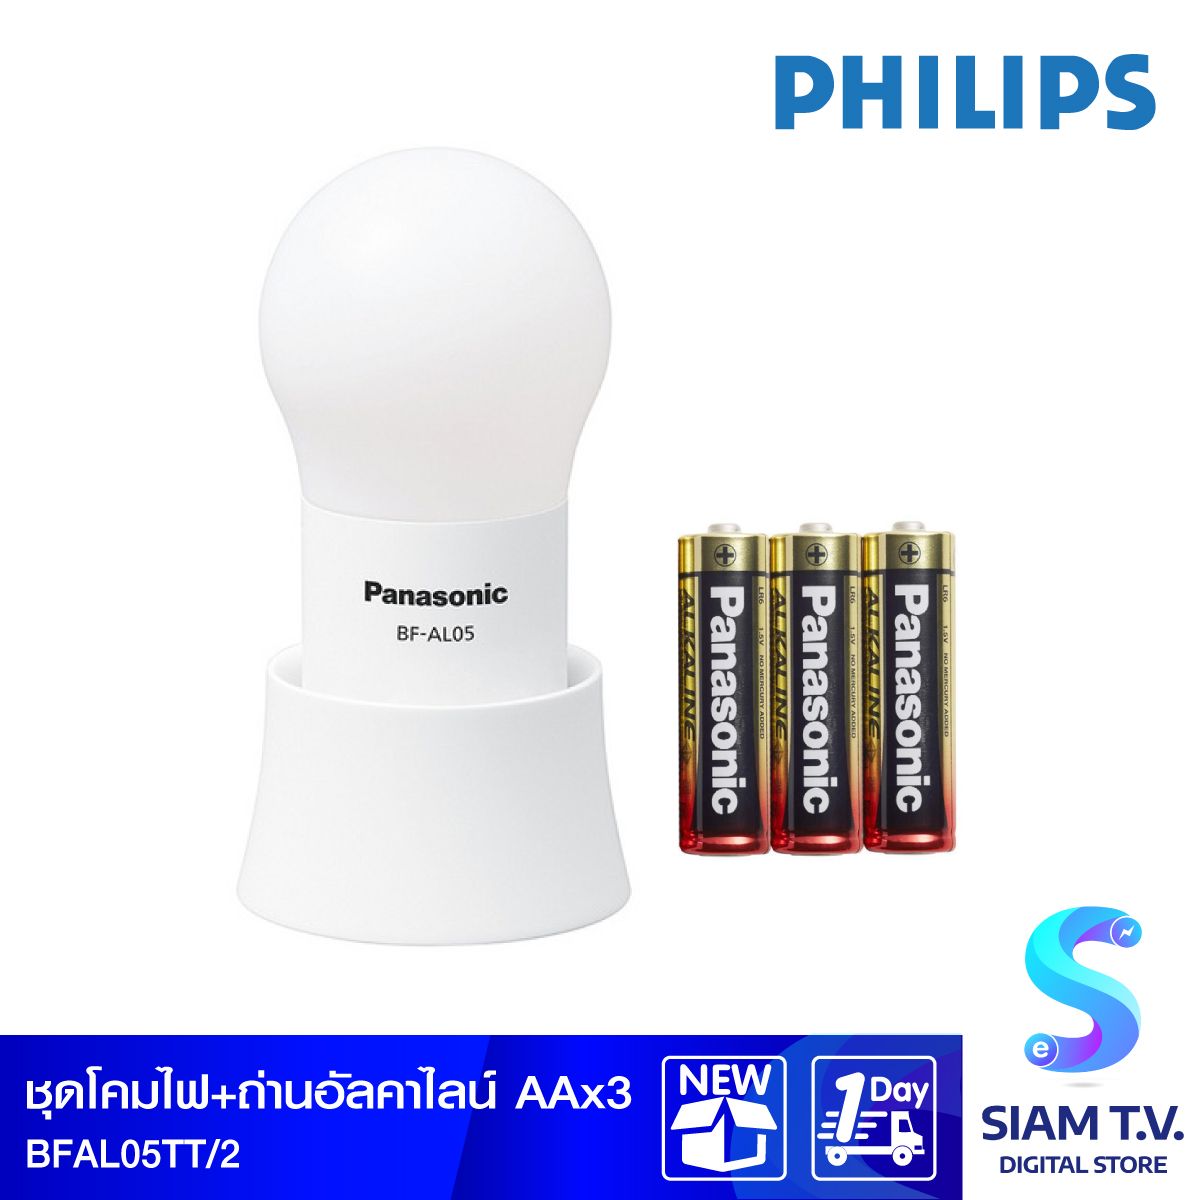 PHILIPS ชุดไฟฉายโคมไฟ LED Panasonic BF-AL05